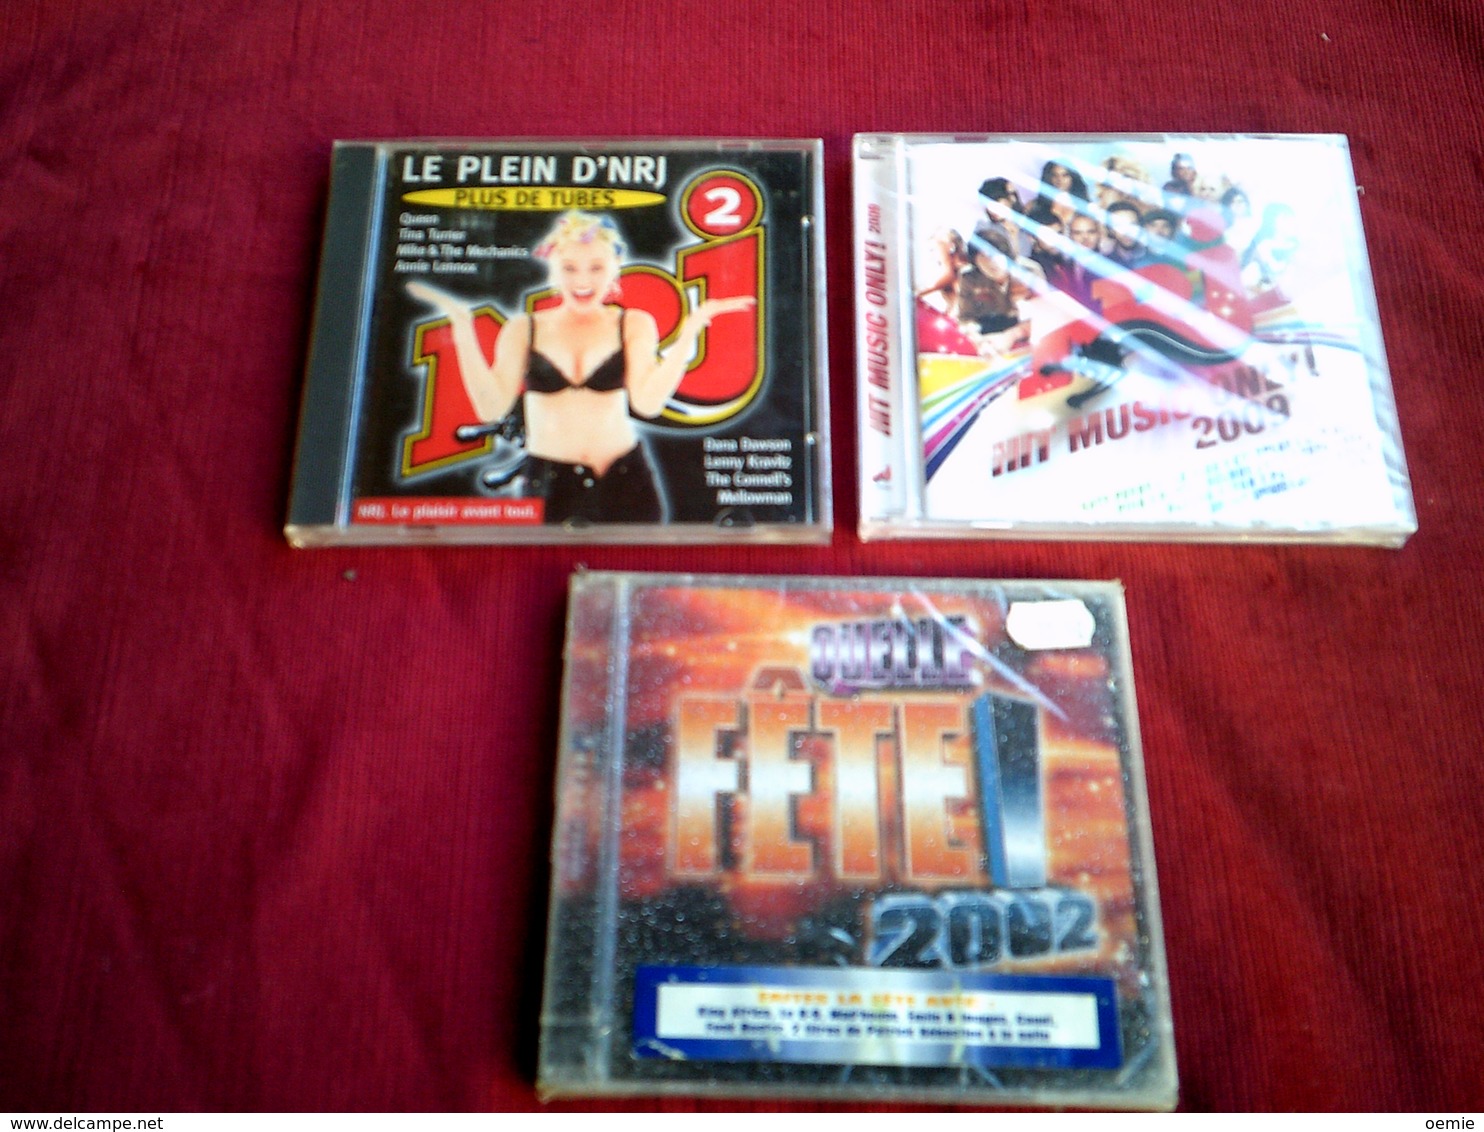 COLLECTION DE 3 CD ALBUM  DE COMPILATION  ° NRJ   ° HIT MUSIC ONLY 2009  DOUBLE CD 33 TITRES+ NRJ 2 + FETE 2002 - Collections Complètes